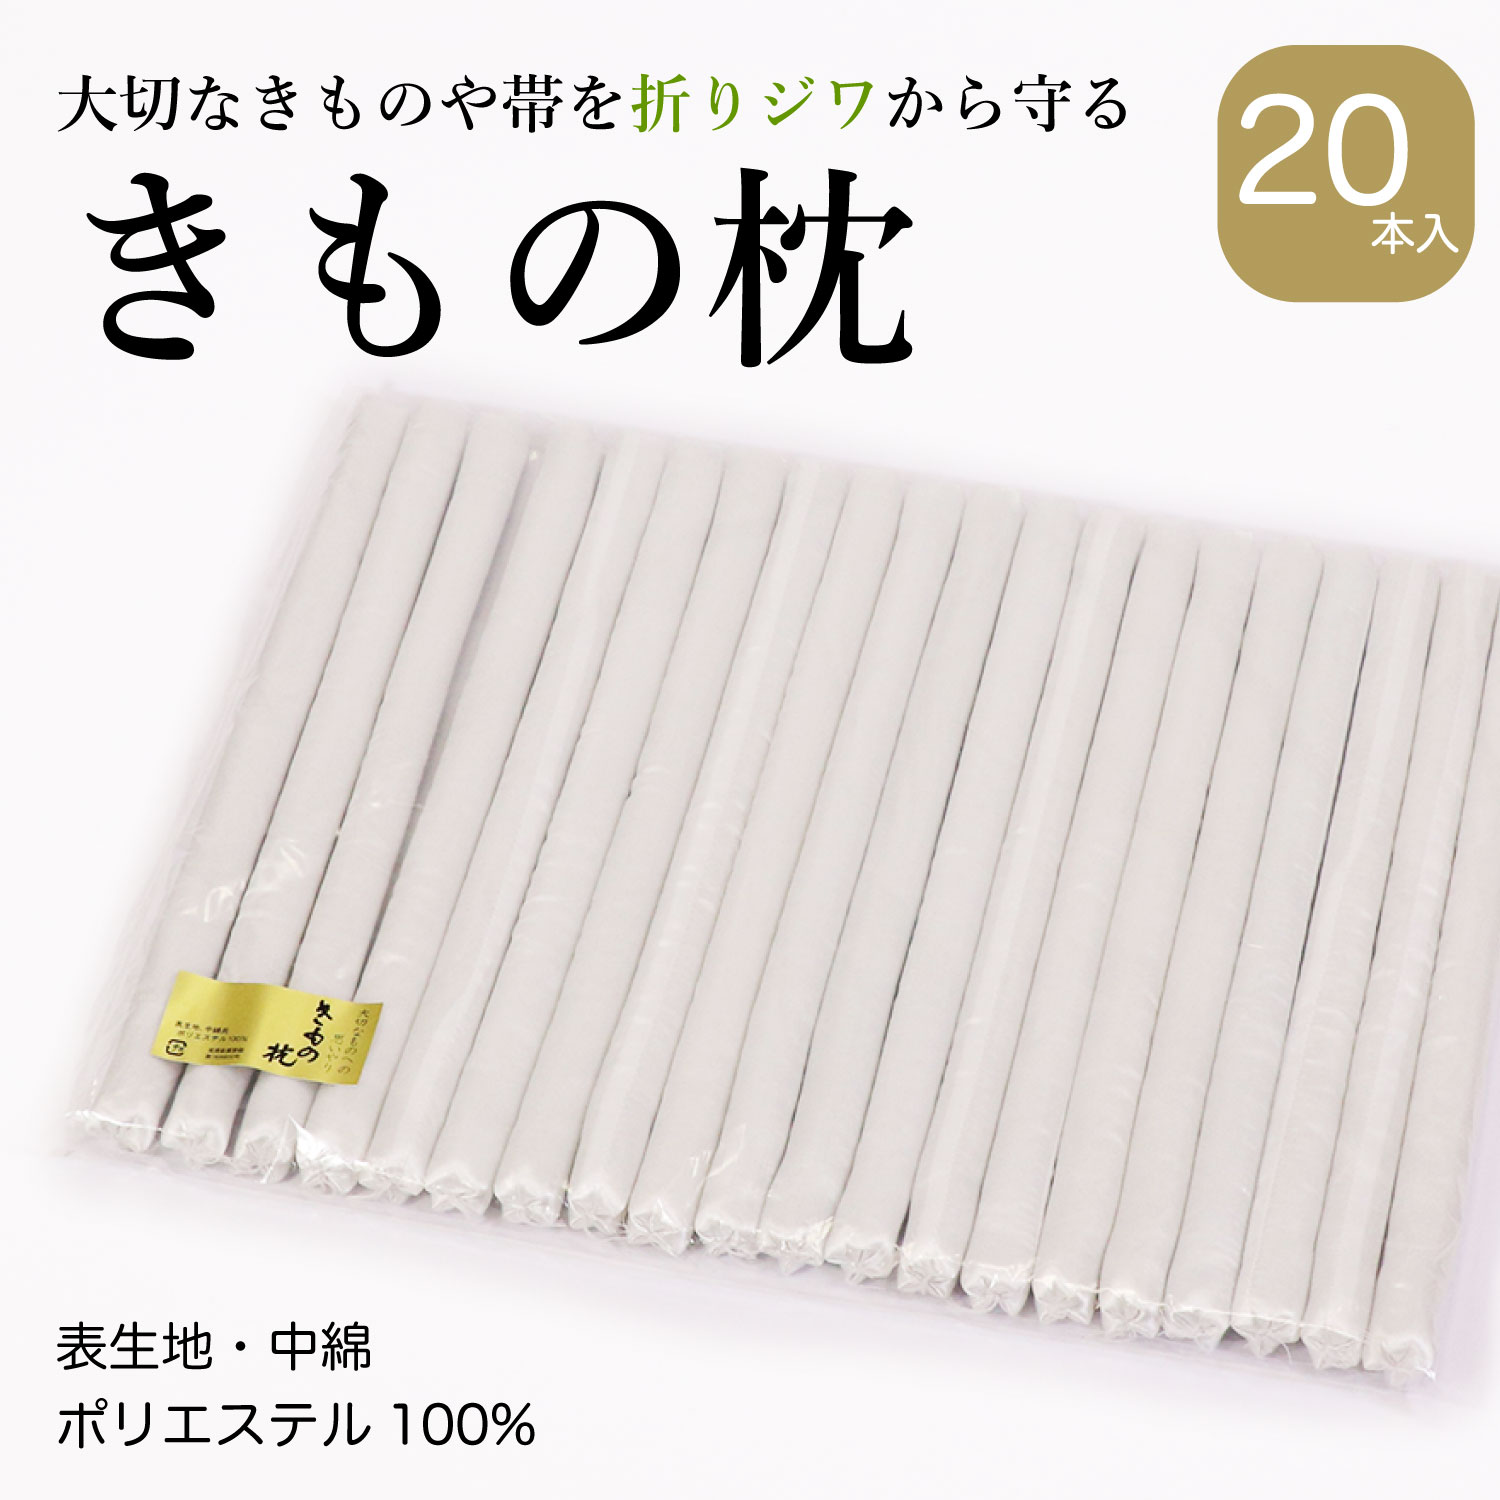 きものや帯の長期保管の際に、きもの枕 1袋(20本入)